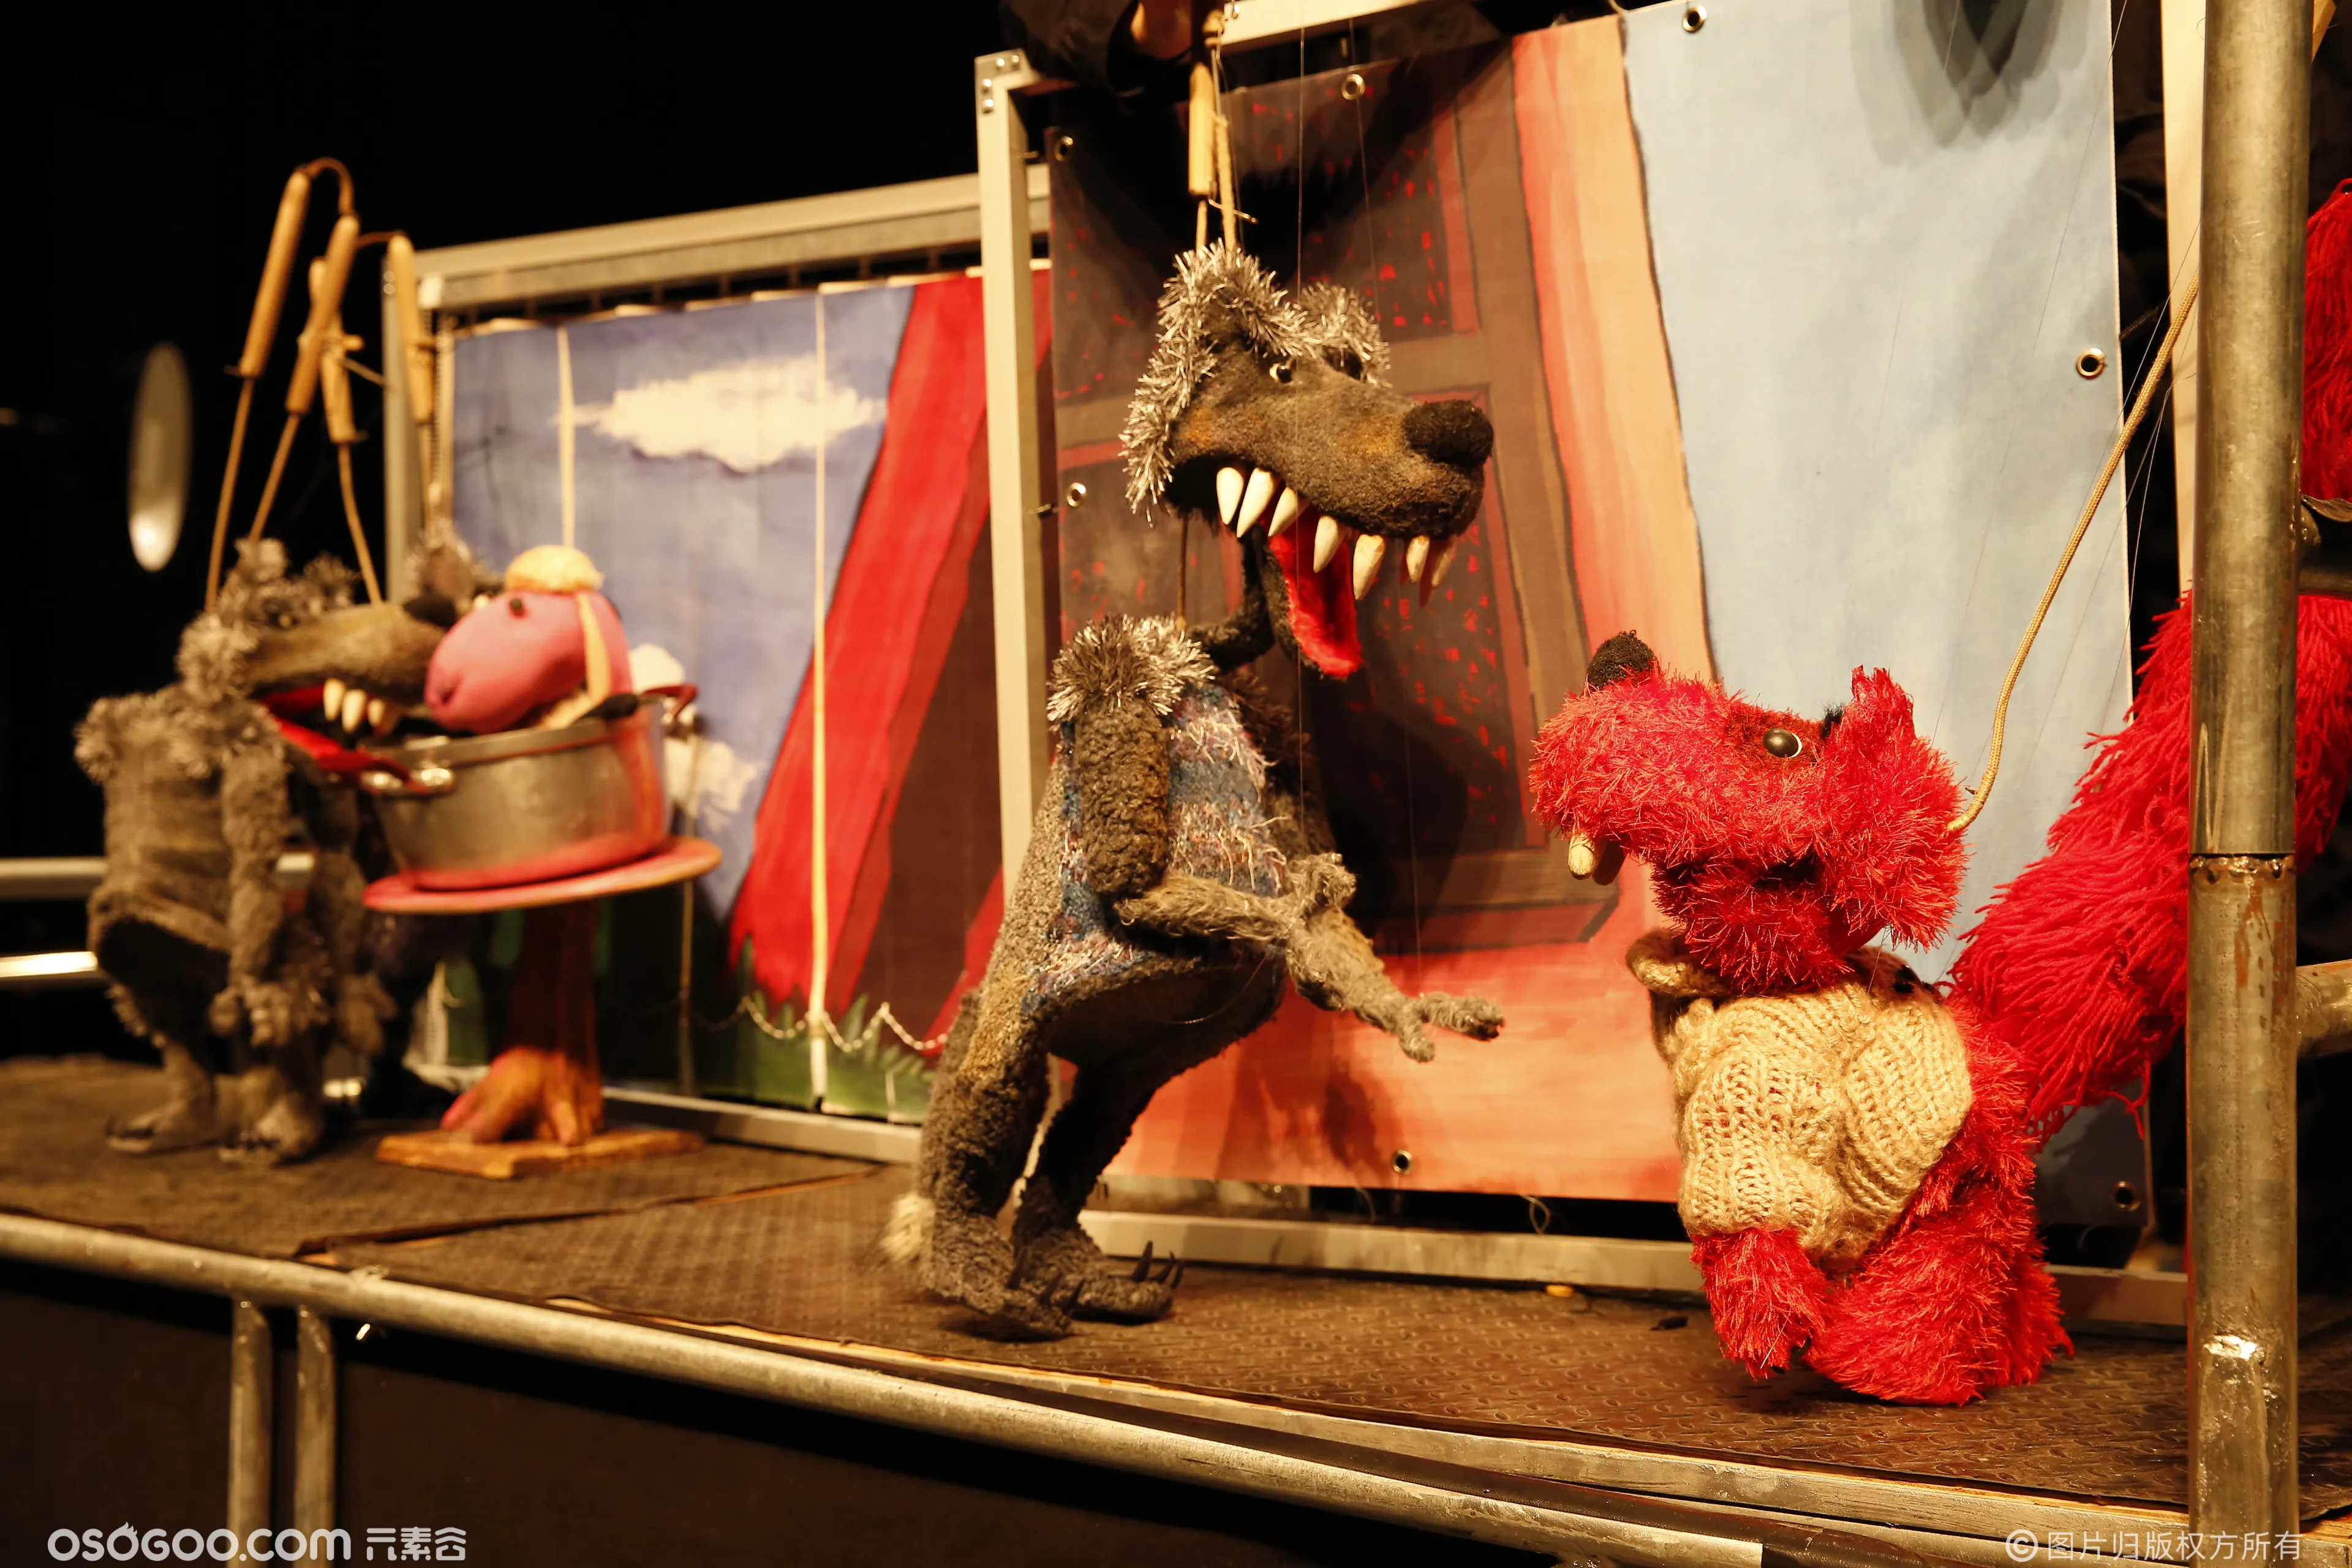 比利时绘本装置儿童剧《吃面条的小红狼》